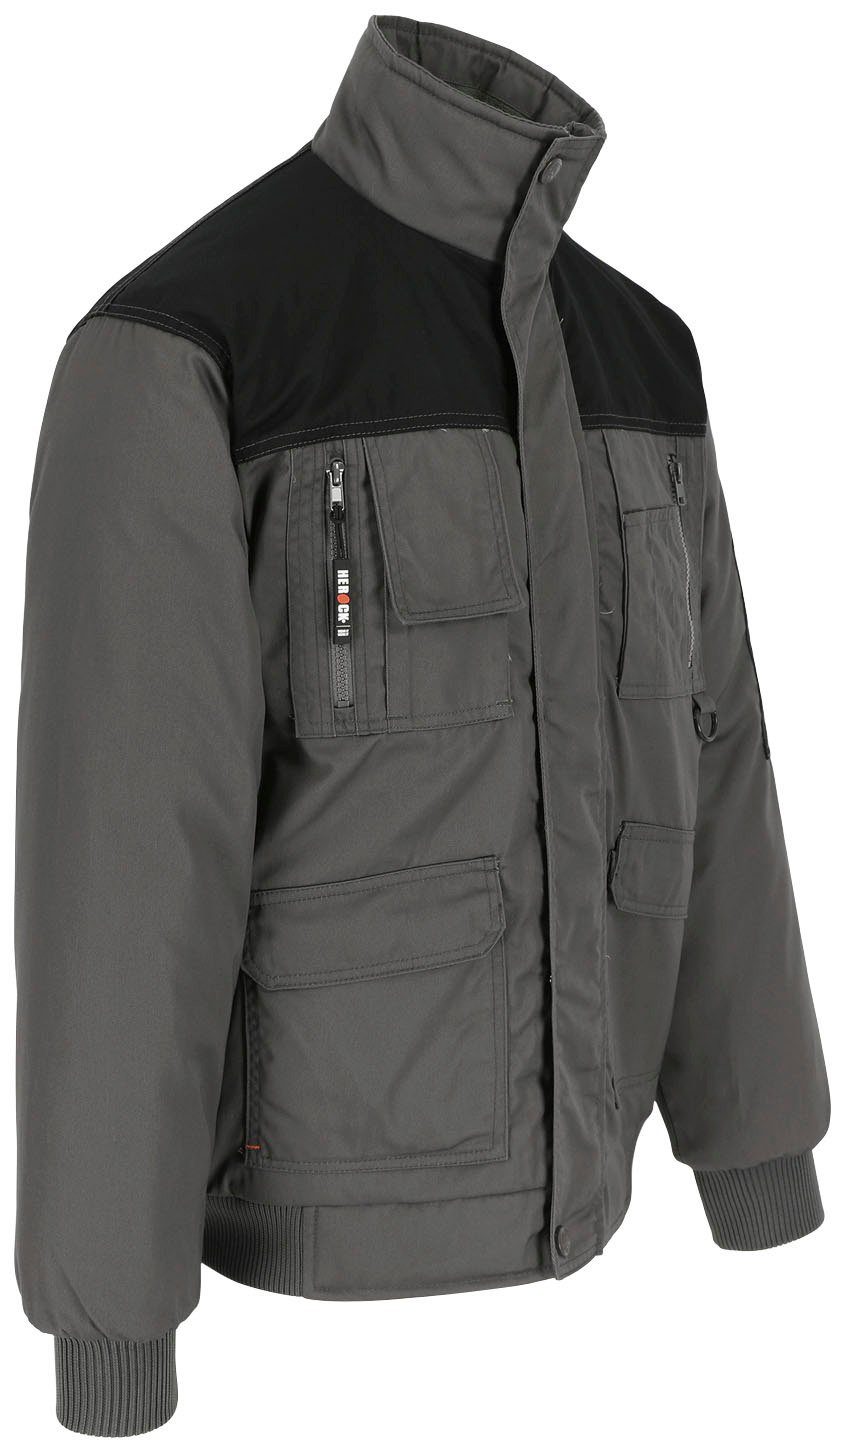 Herock Arbeitsjacke Typhon Jacke Wasserabweisend grau robust, Farben viele Taschen, Fleece-Kragen, viele mit